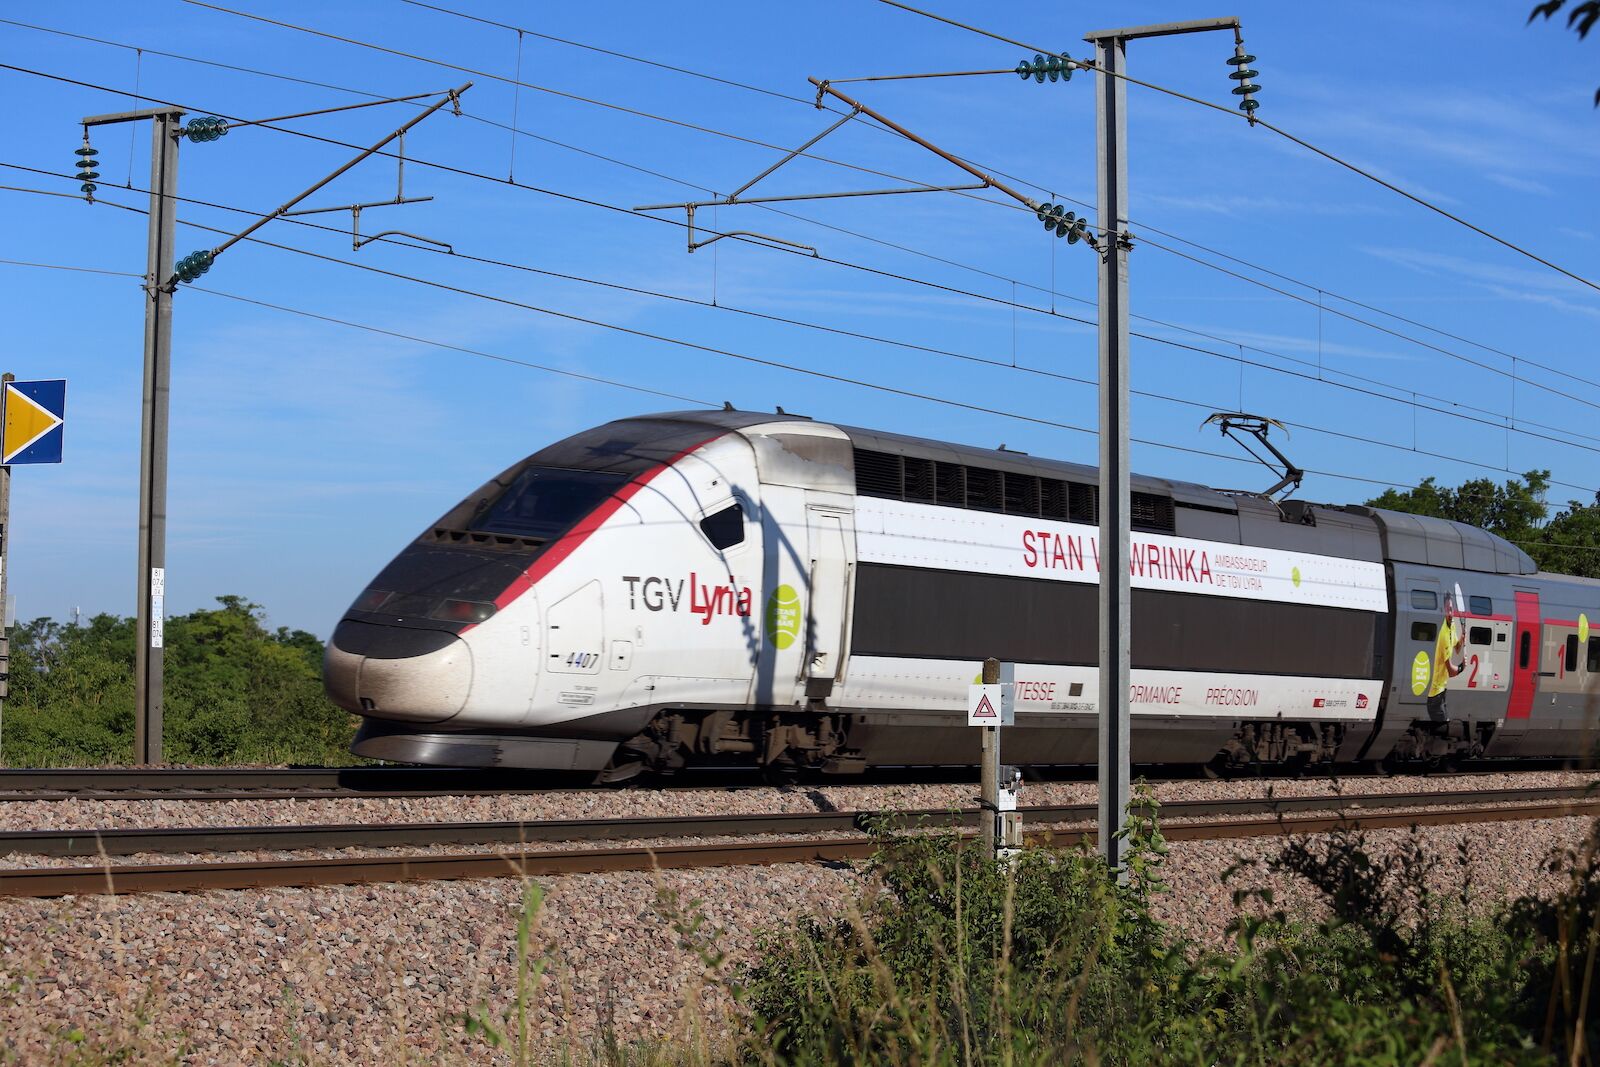 TGV Lyria runs between Paris and Geneva